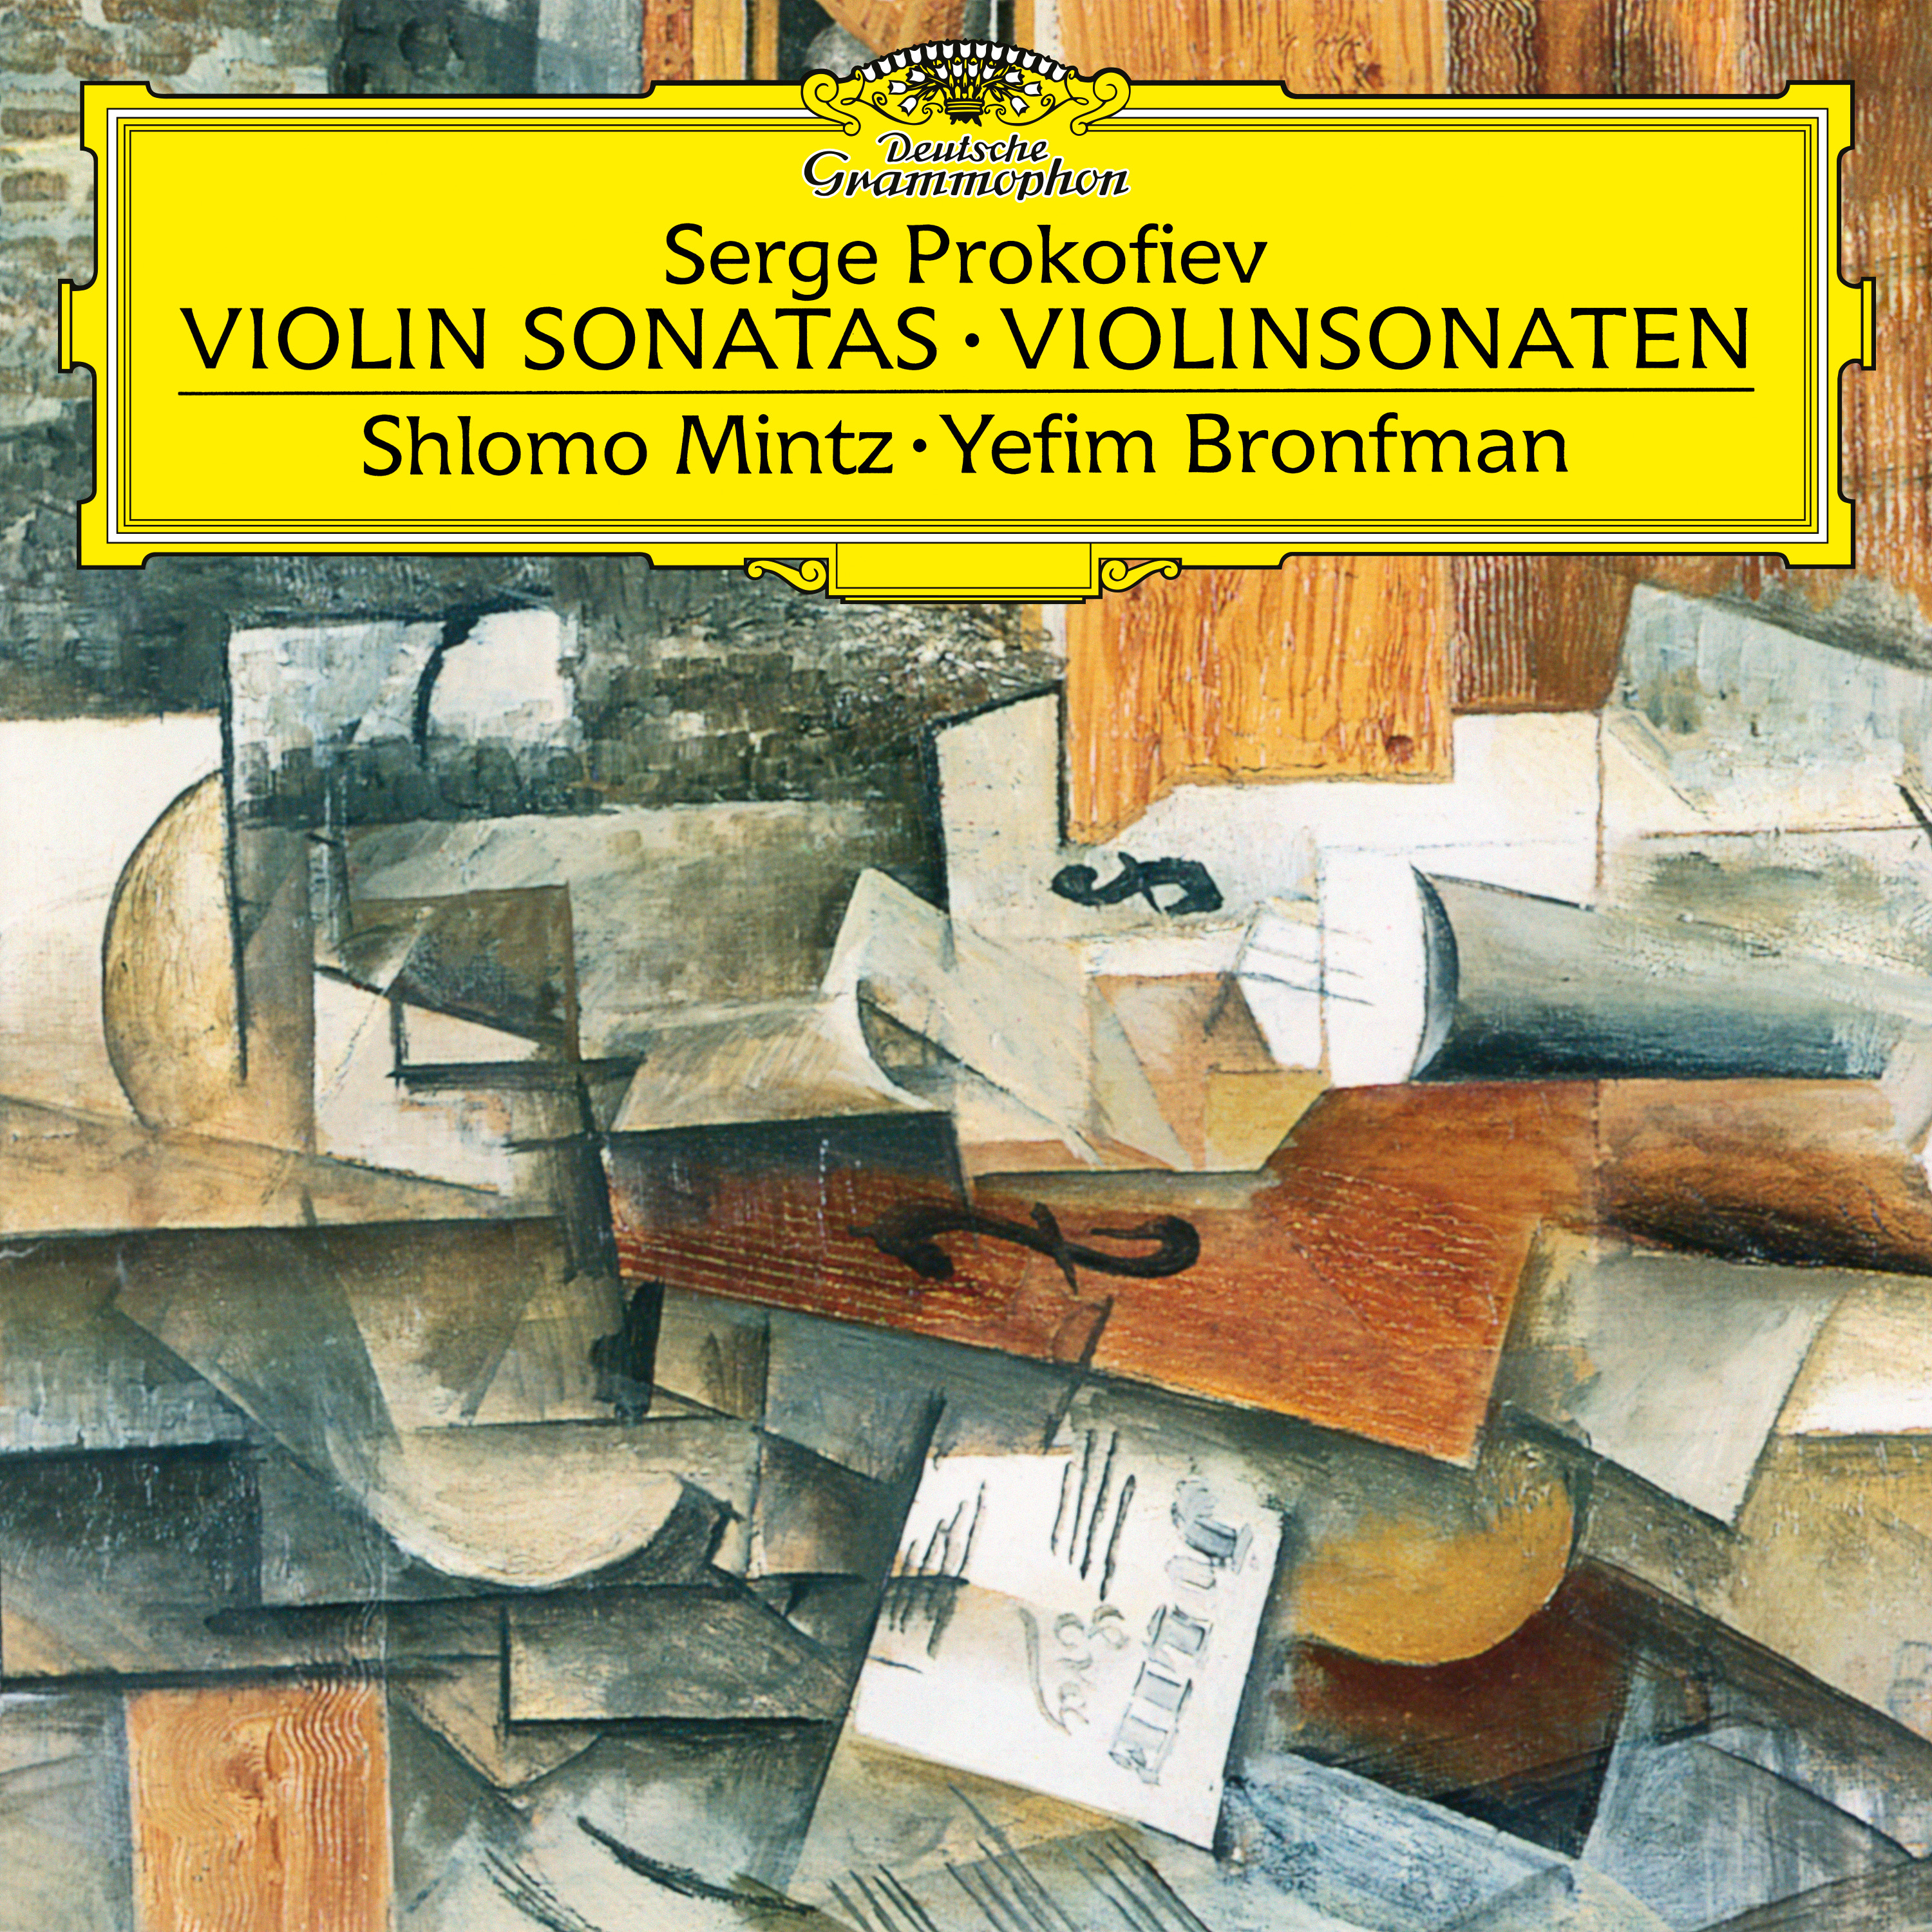 Sonata for Violin and Piano No.1 in F minor, Op.80:4. Allegrissimo